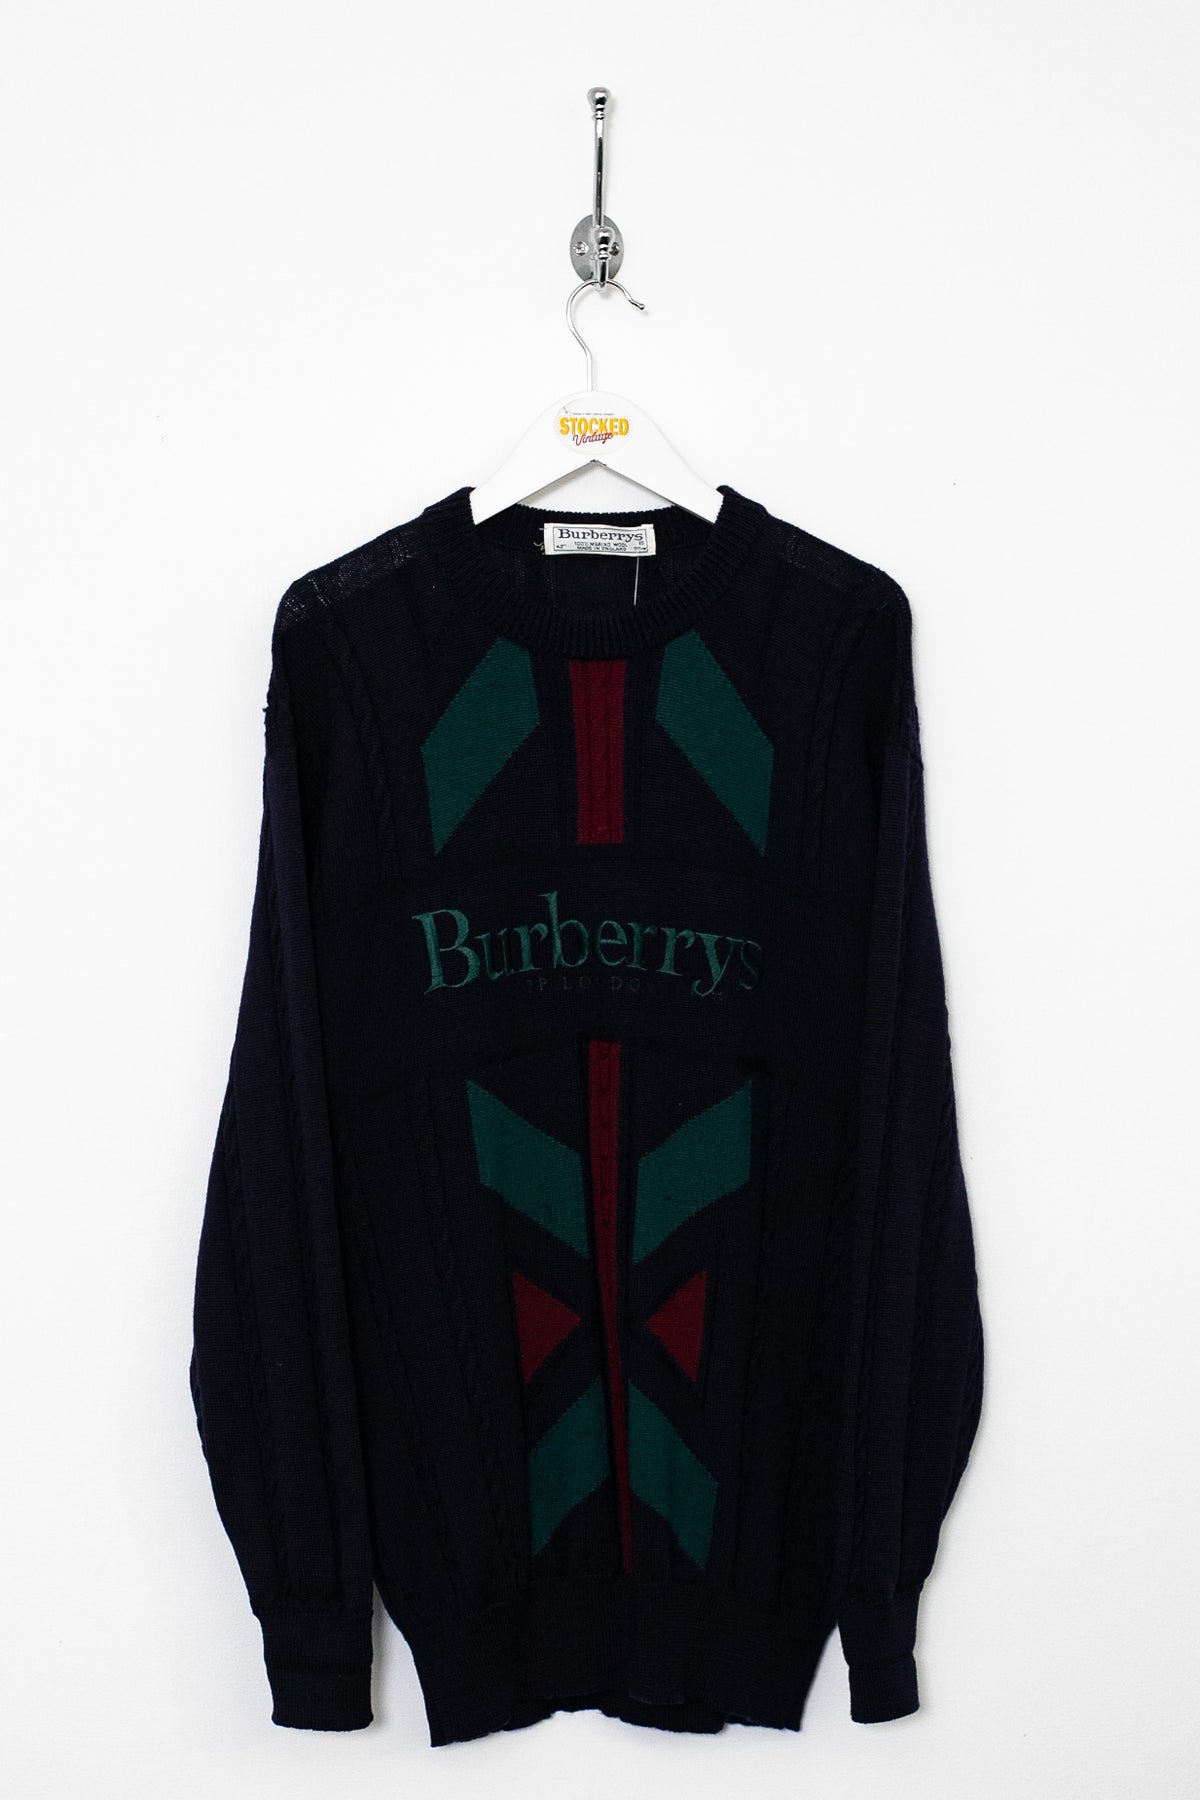 90s Burberry Knit Jumper (M)